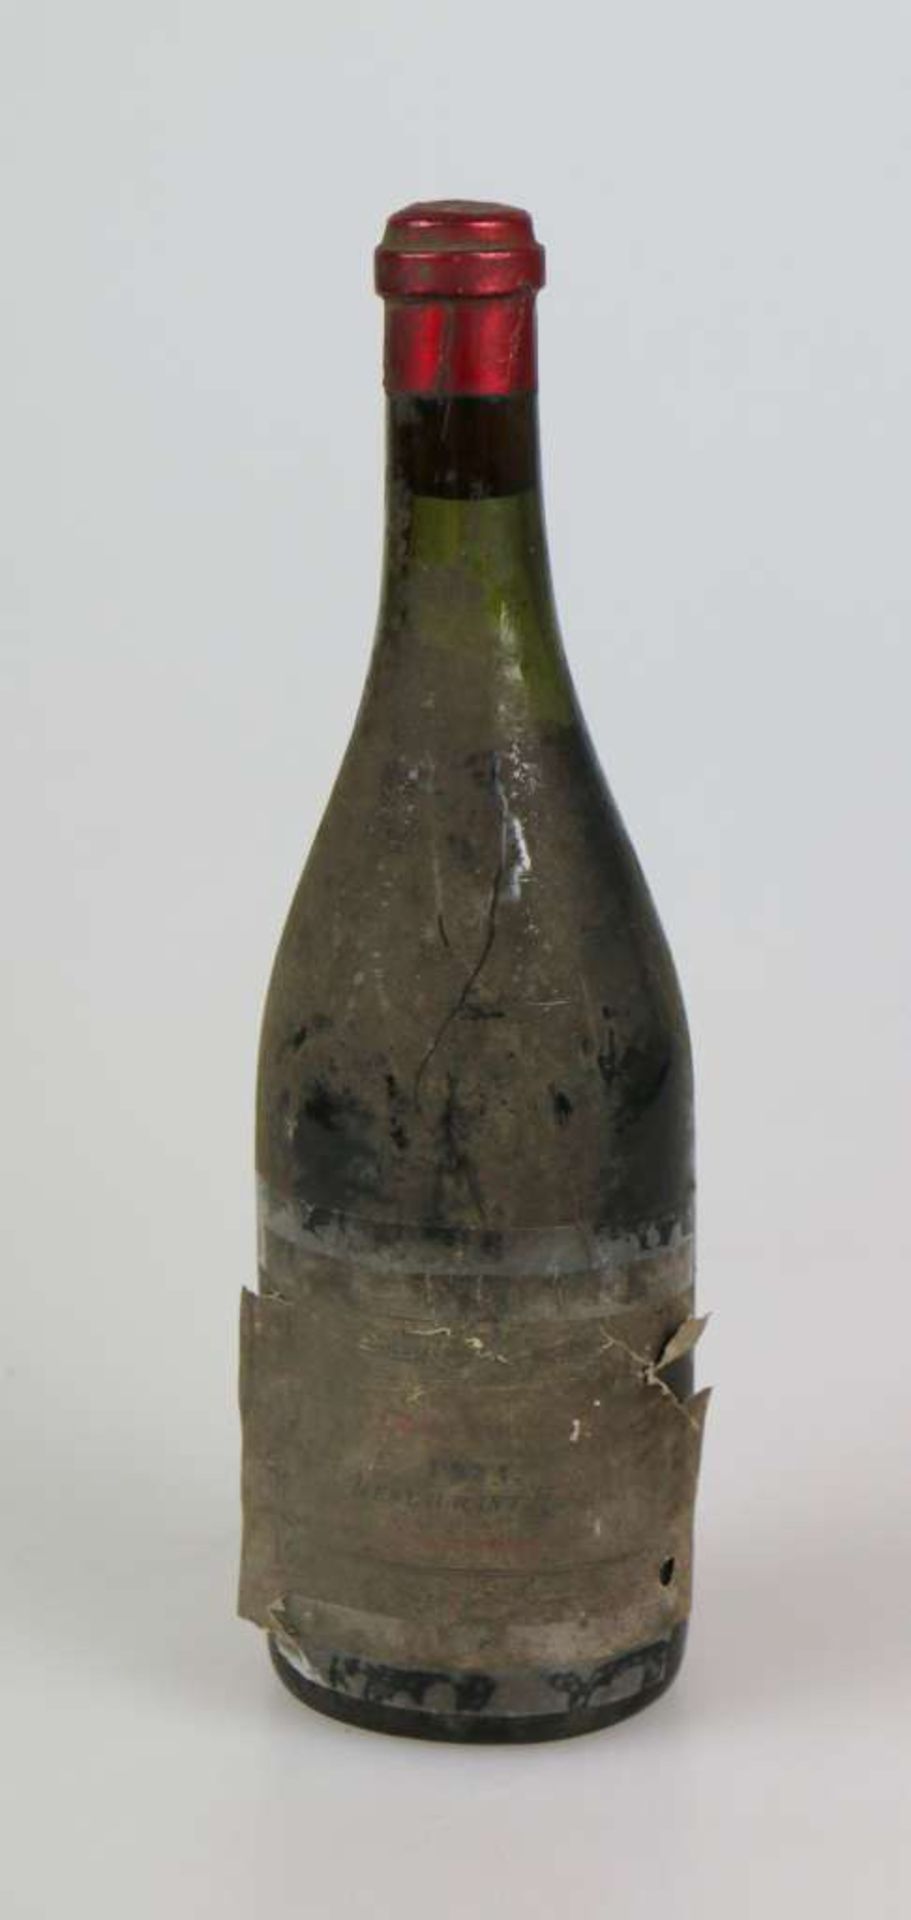 Rotwein, Flasche Clos Vougeot, 1921, 0,75 L. Etikett kaum lesbar, upper mid shoulder. Der Wein